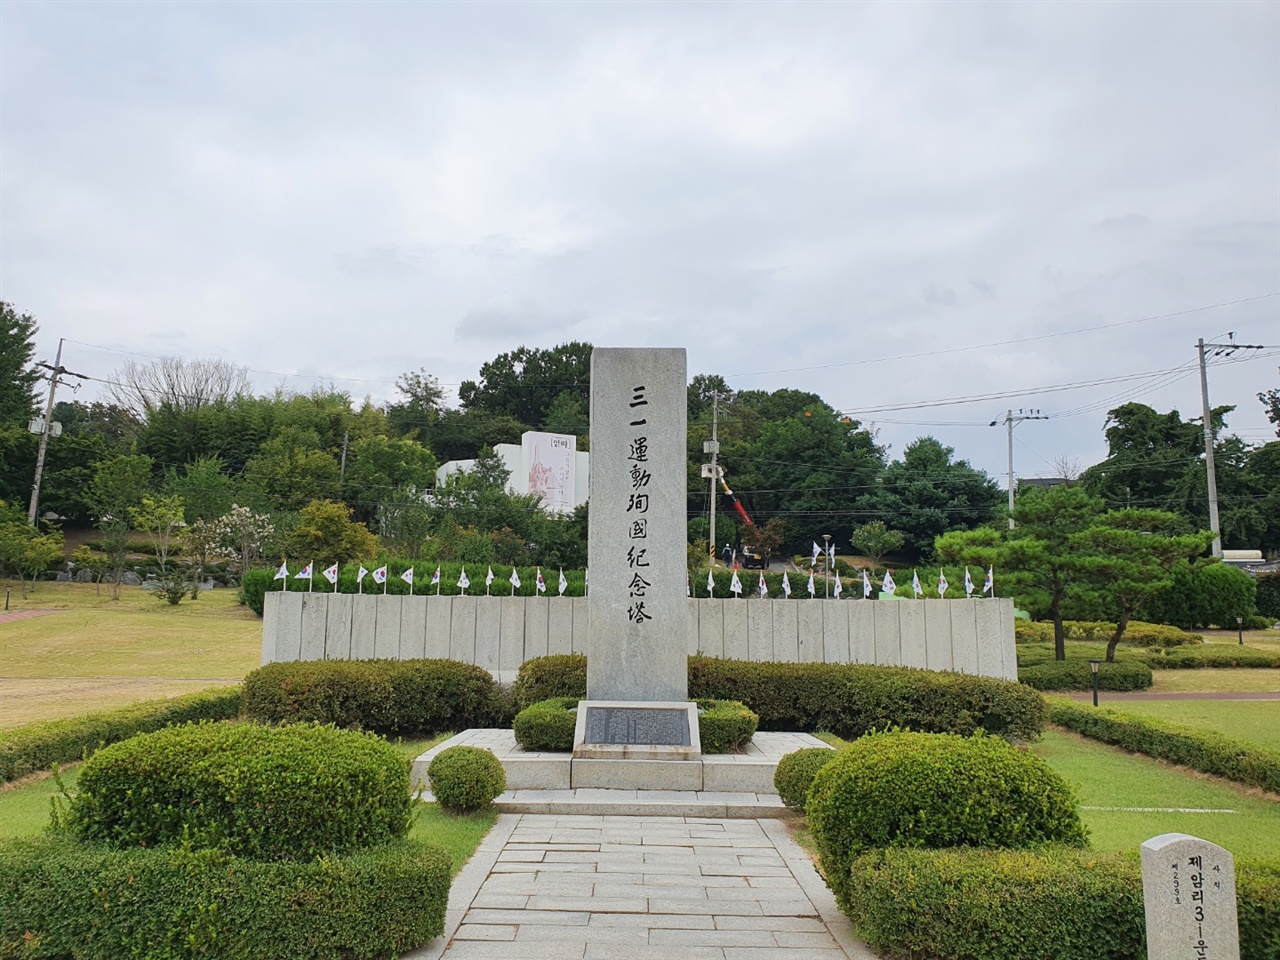 일본 군인들이 제암리 예배당에 마을 주민들을 몰아넣고 불을 질러 학살한 터에는 현재 3.1운동 순국 기념탑이 들어서 있다.